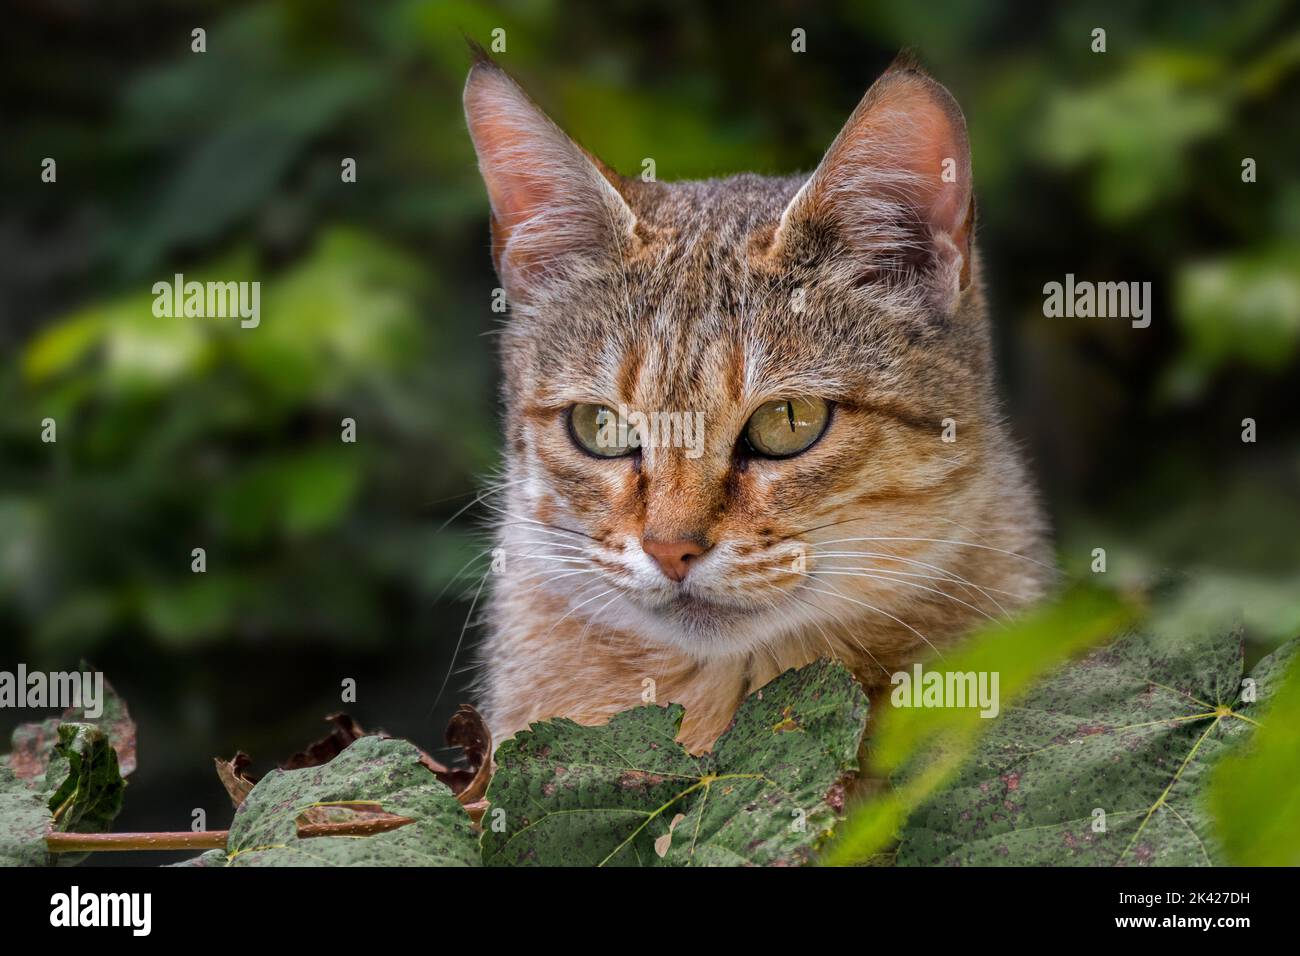 Gatto selvatico arabo / gatto selvatico di Gordon (Felis lybica lybica / Felis silvestris gordoni) gatto selvatico originario della penisola araba Foto Stock